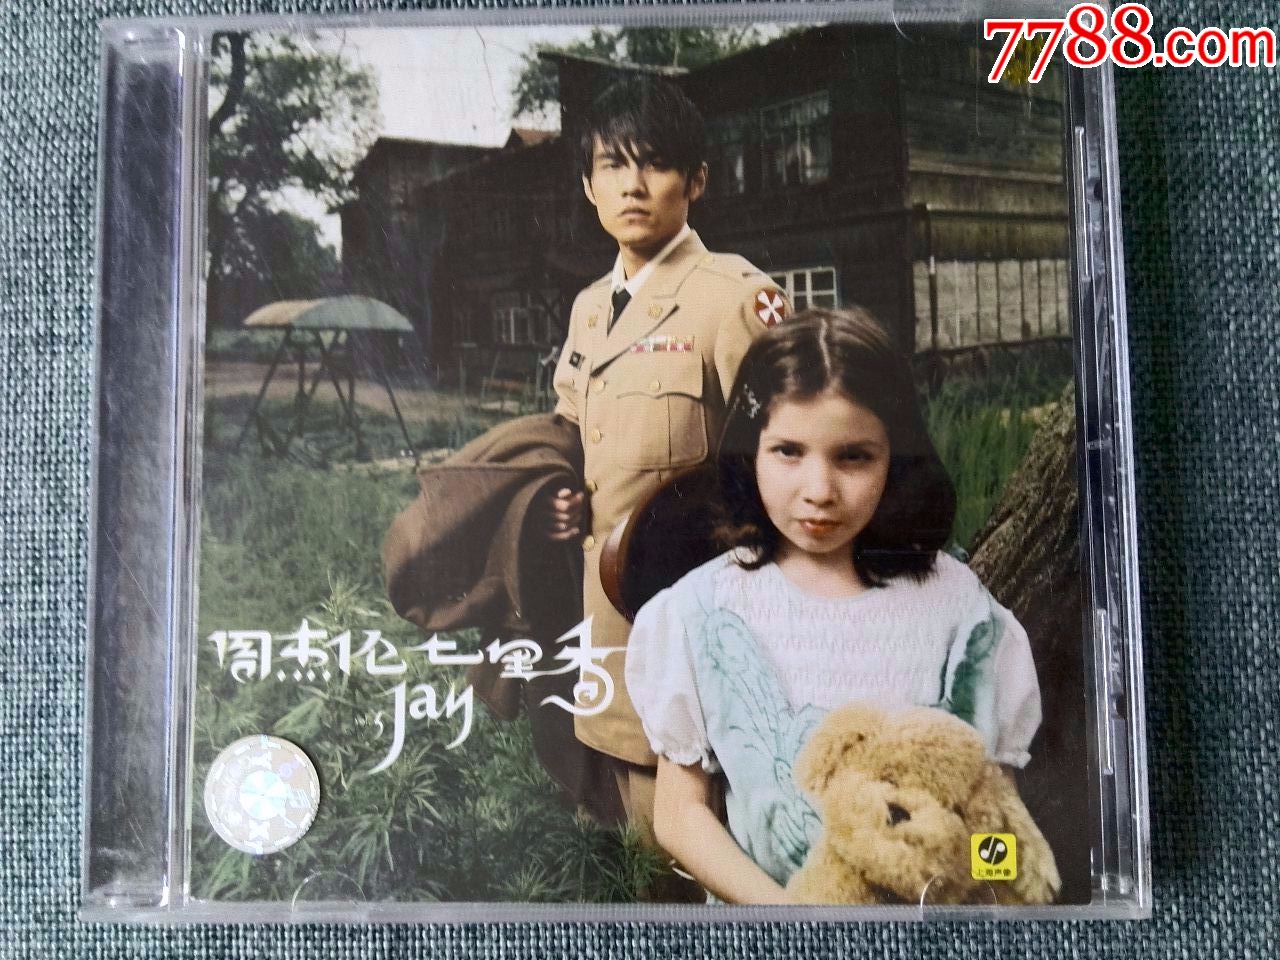 周杰伦专辑《七里香》新索音乐版权,上海声像发行(限量版)_价格45元